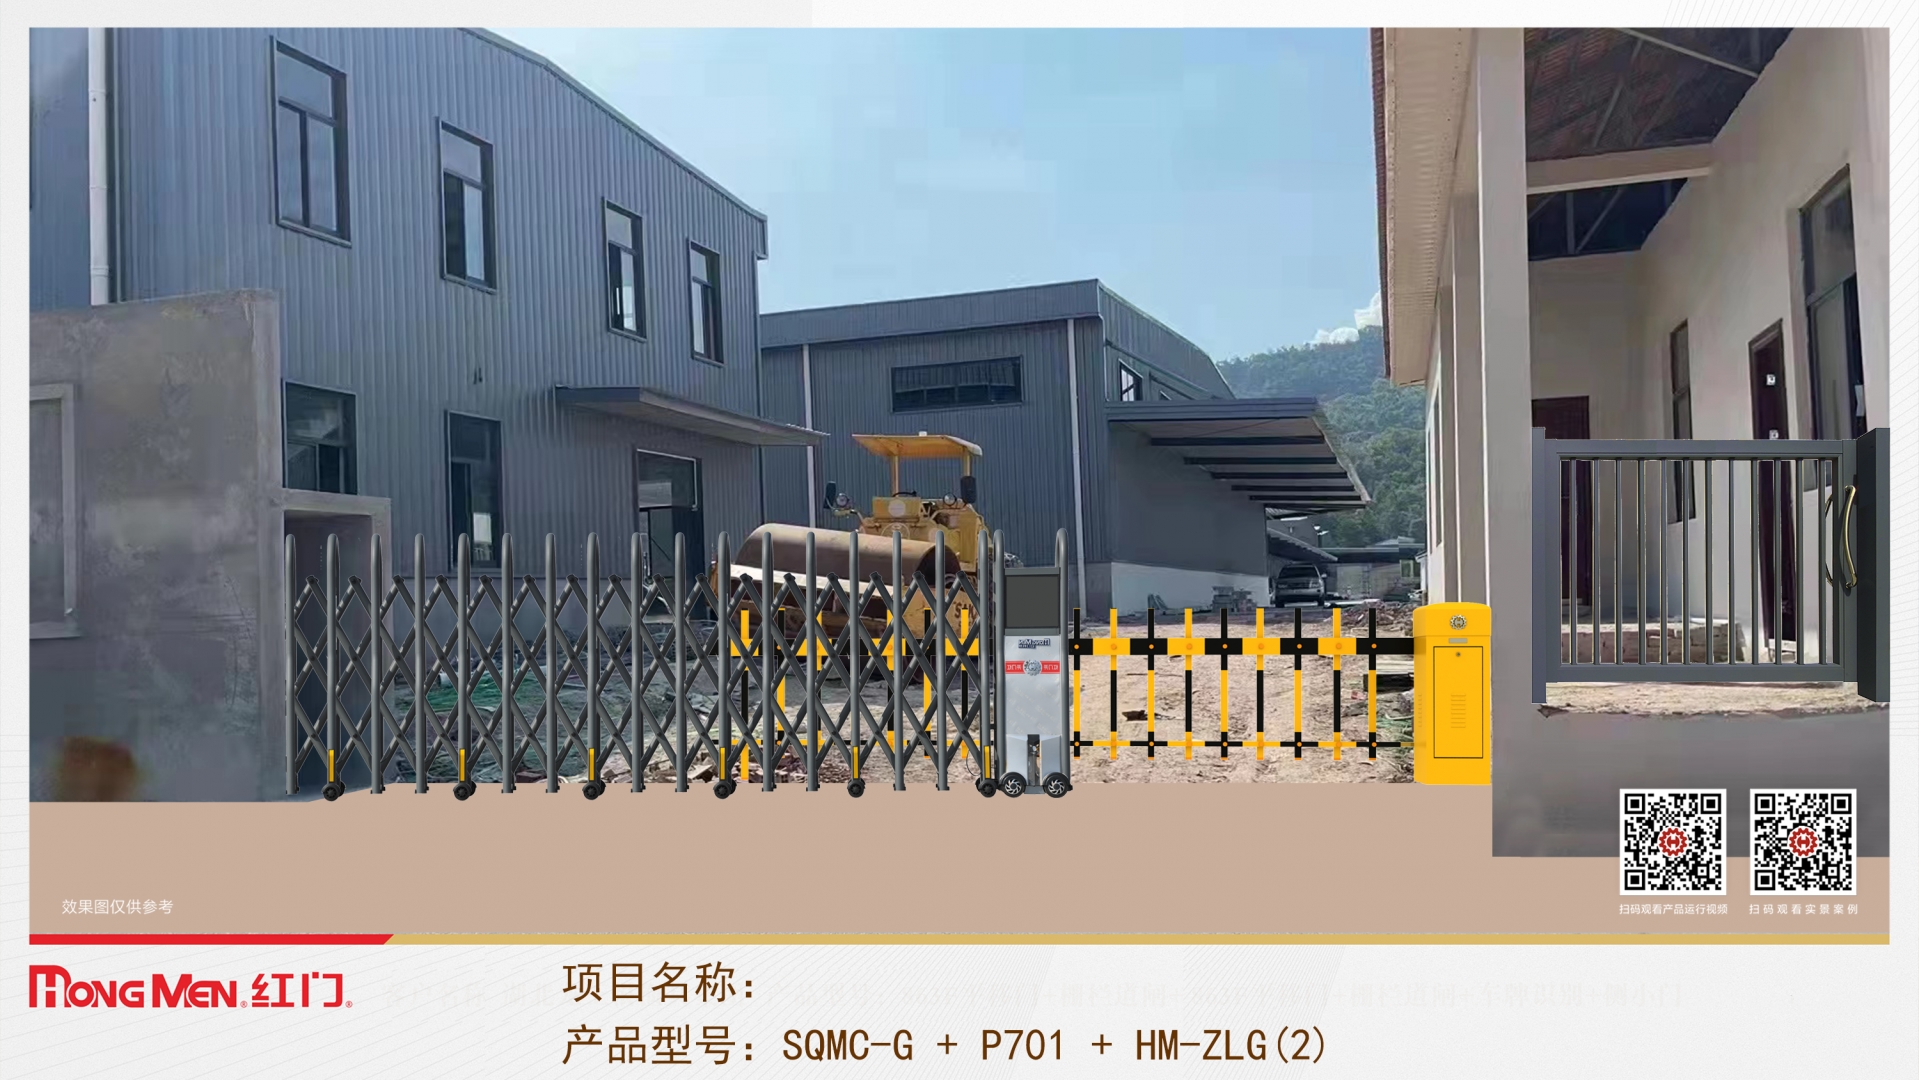 Có nên lắp đặt thêm barrier tự động tại cổng chính?